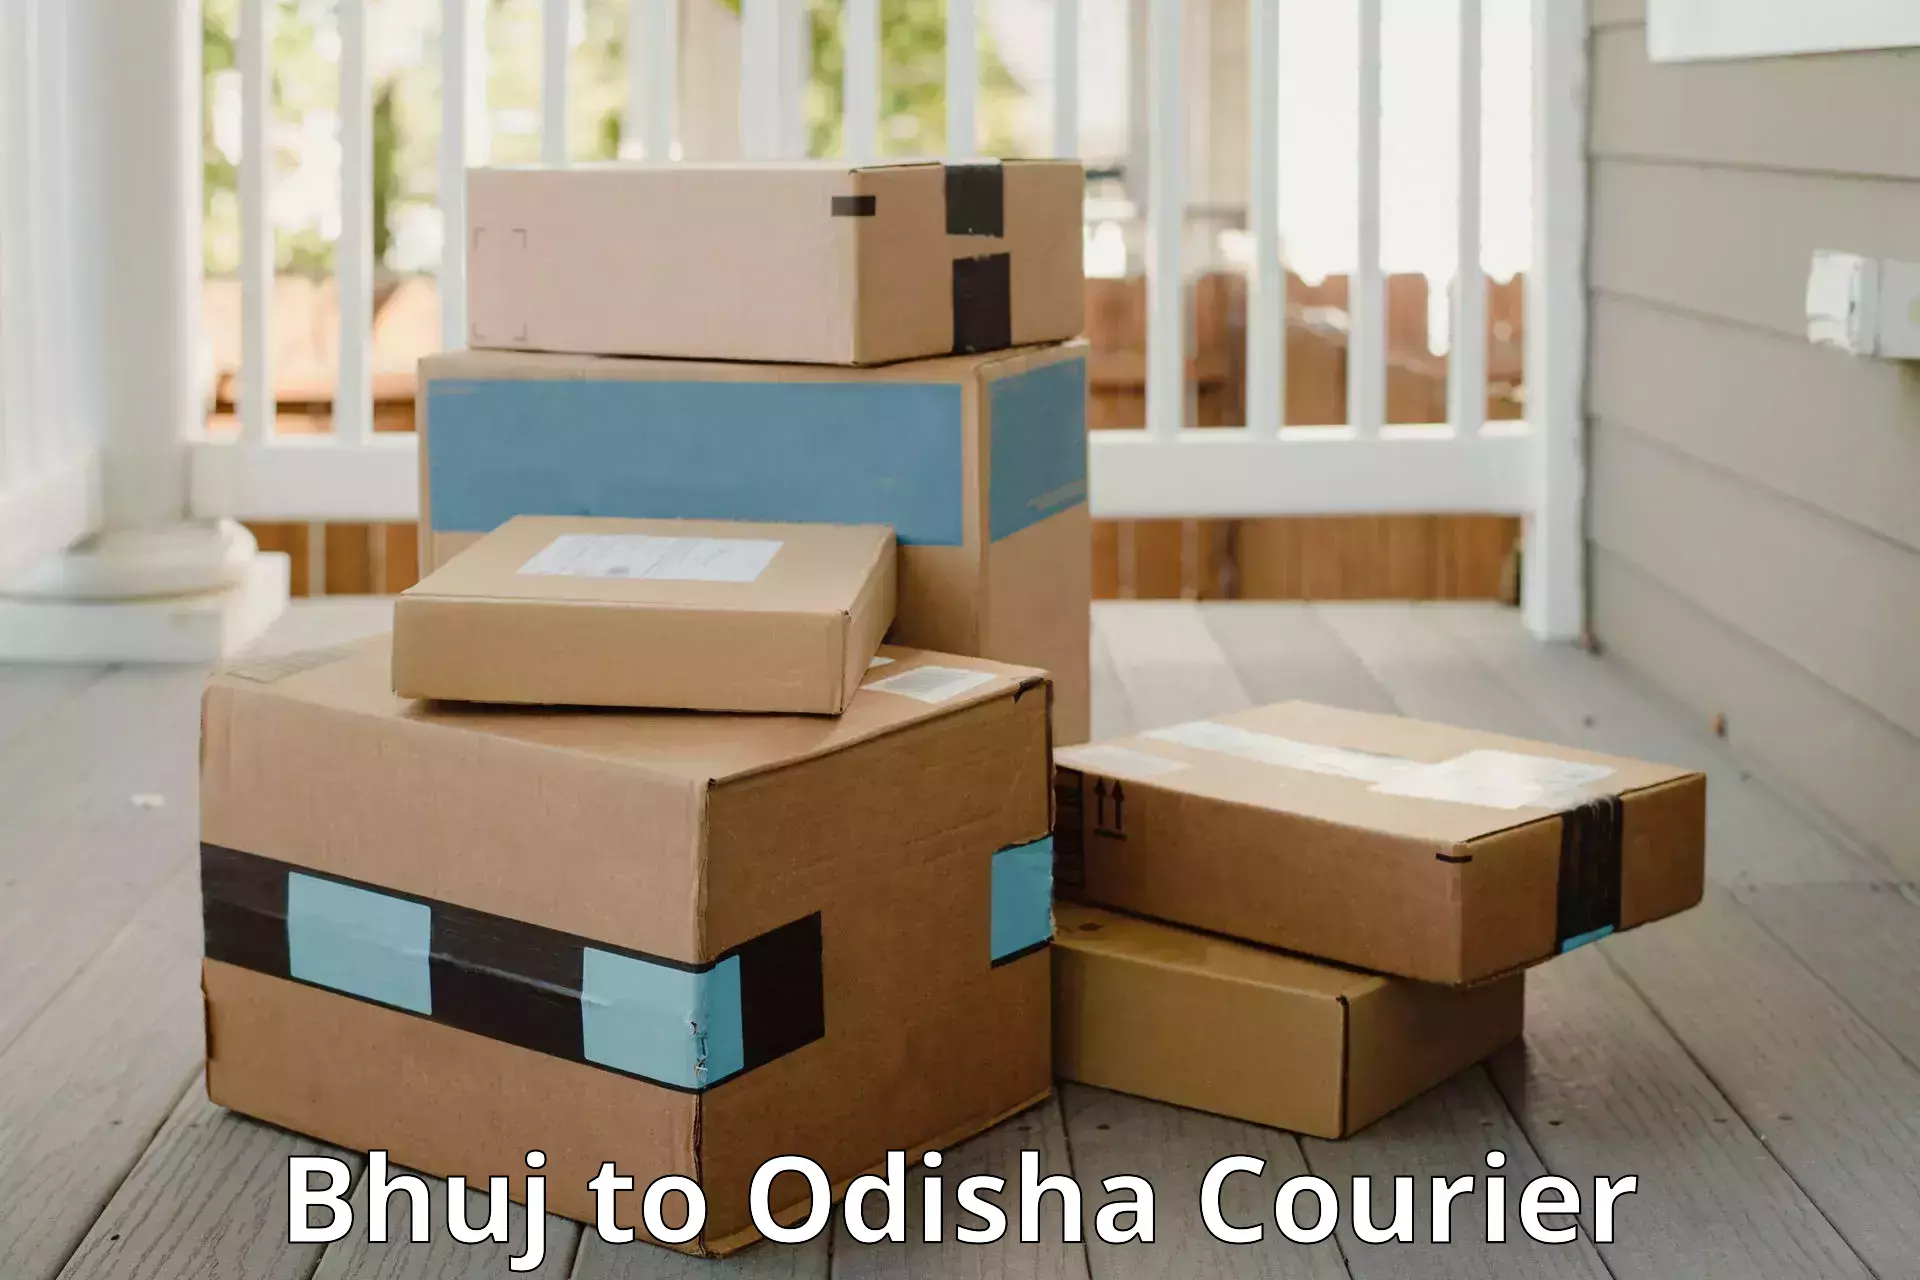 Luggage delivery rates Bhuj to Bhubaneswar